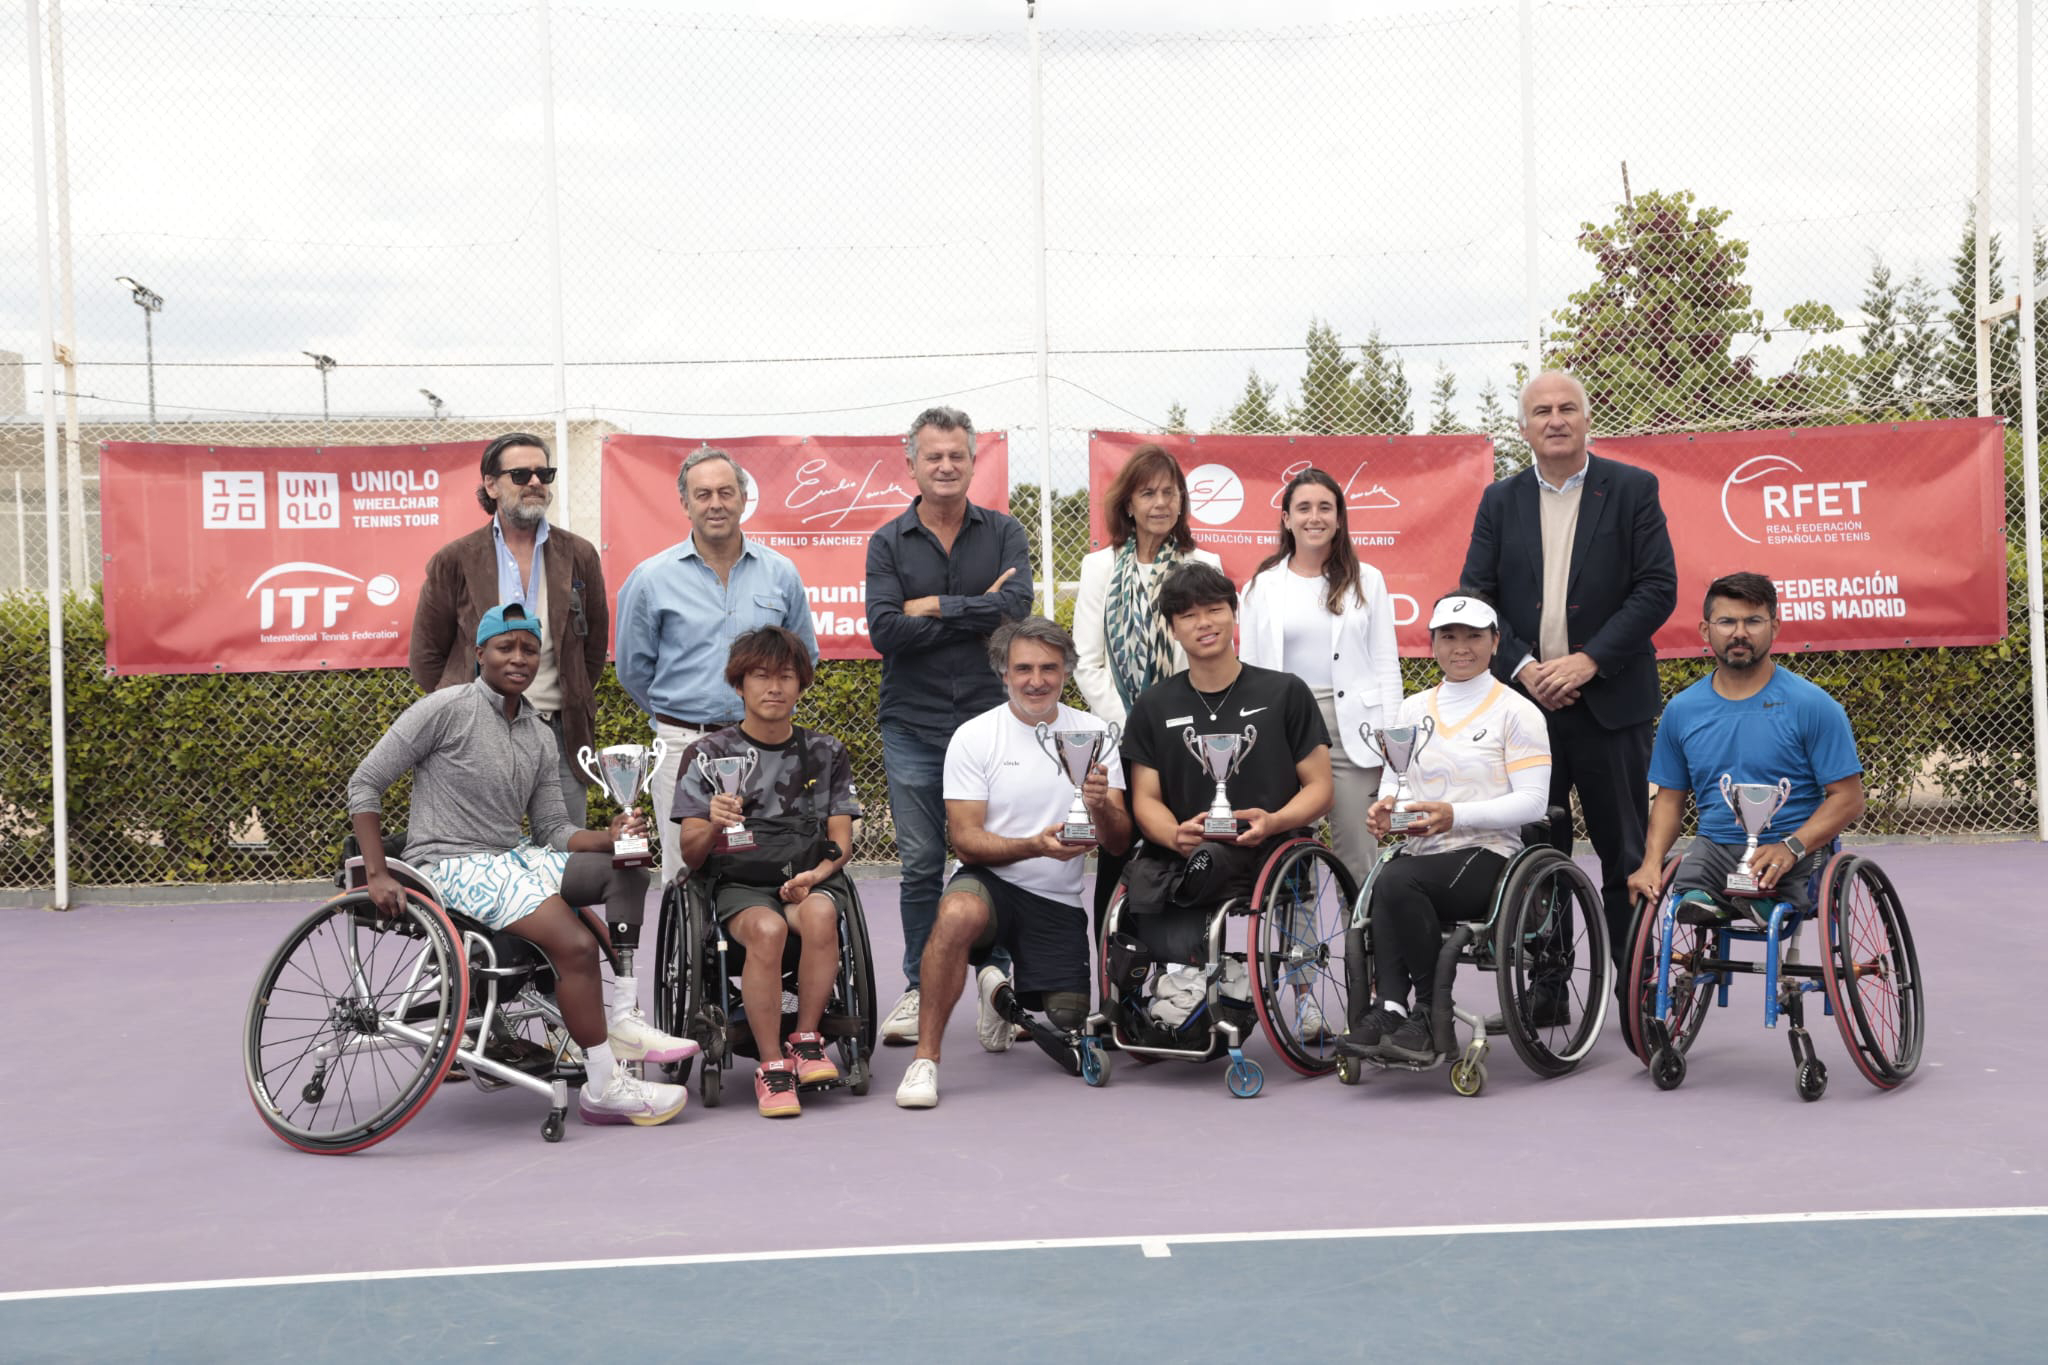 Houdet y Montjane ganan el XI Torneo Internacional en silla de ruedas de la Fundación Emilio Sánchez Vicario